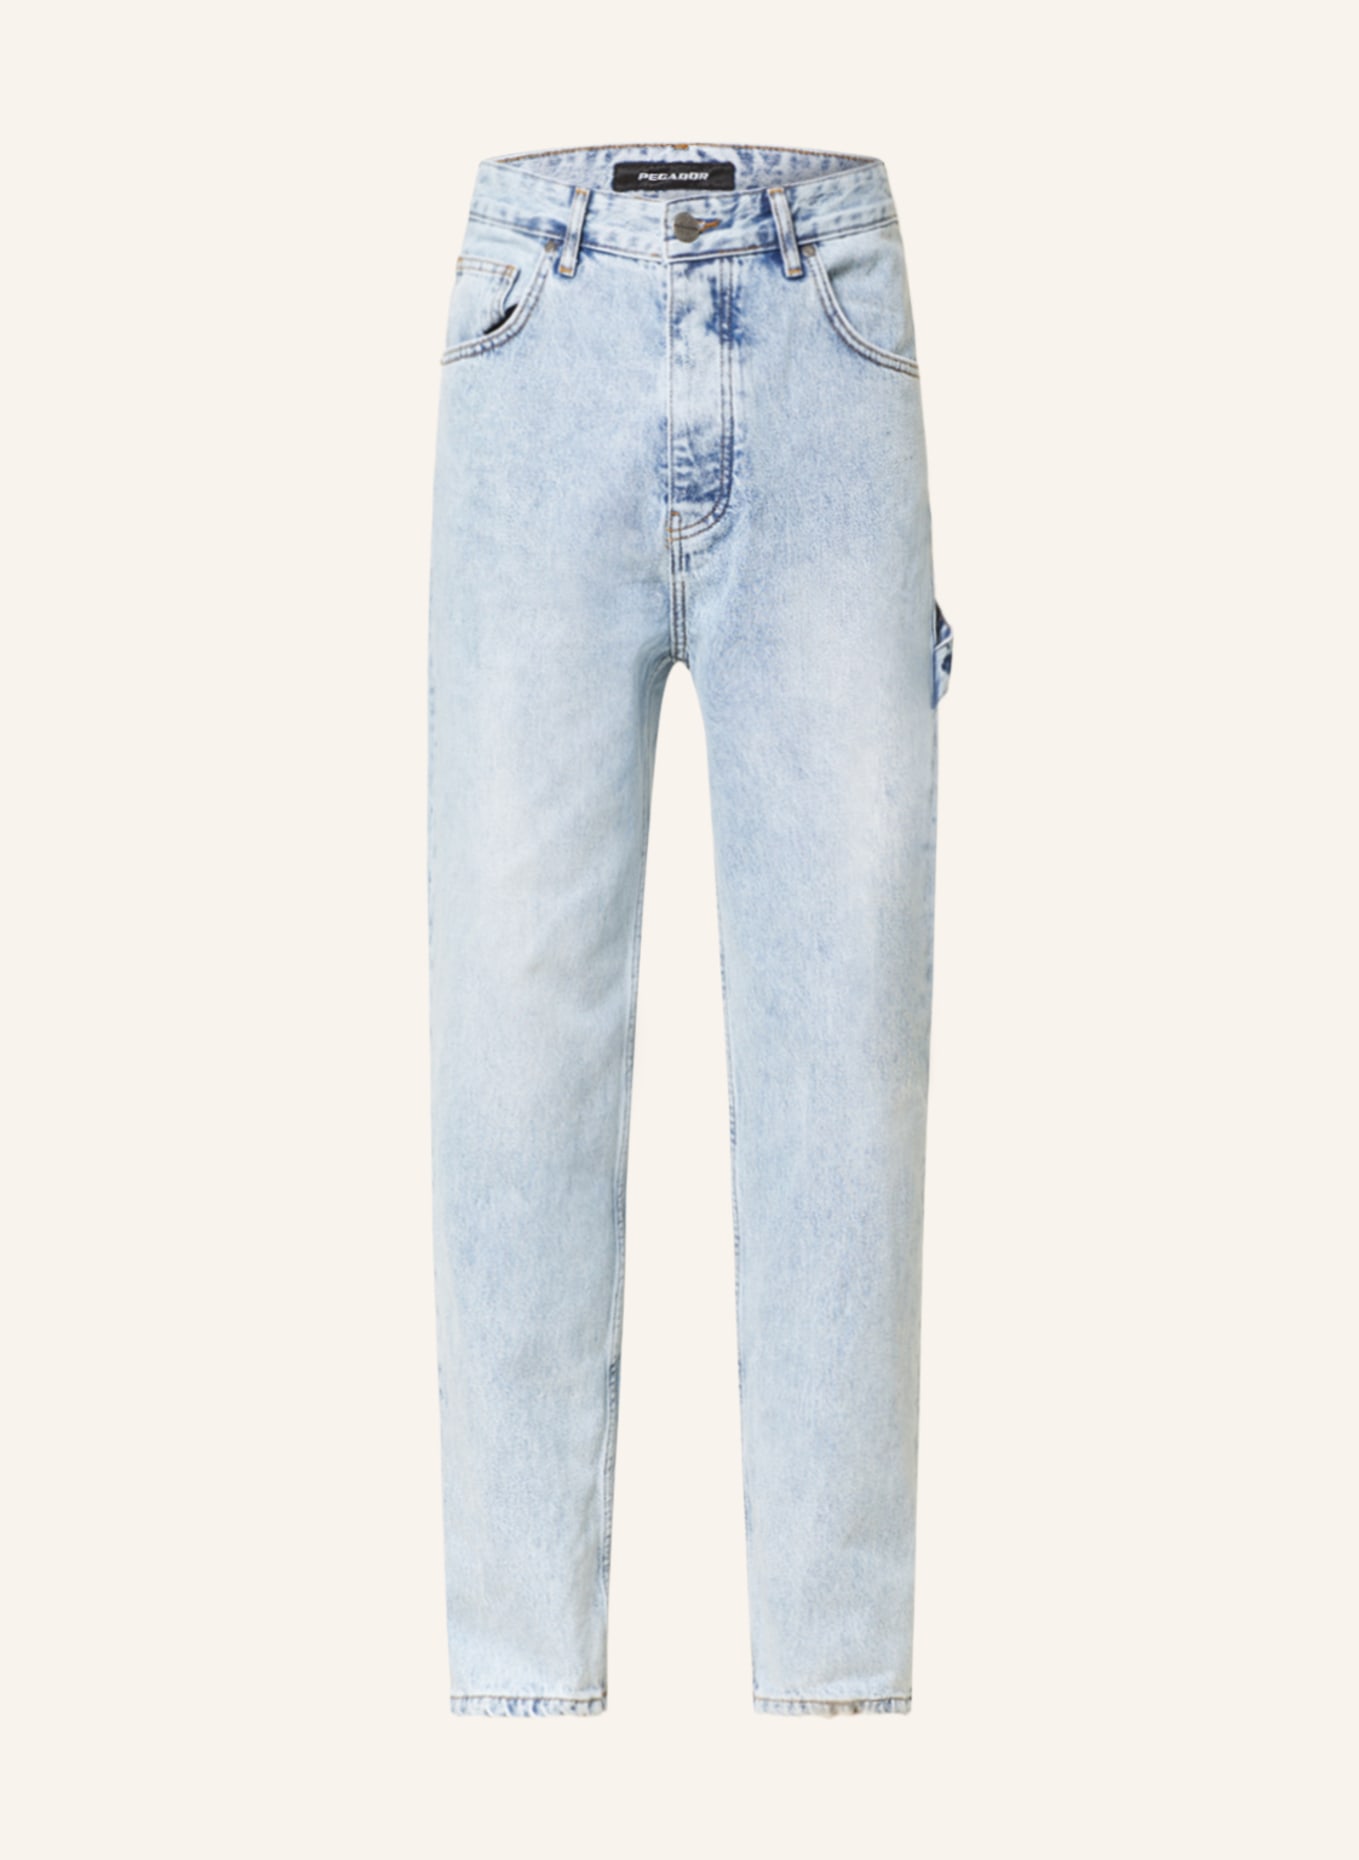 PEGADOR Jeans slim fit, Color: 076 washed light blue (Image 1)